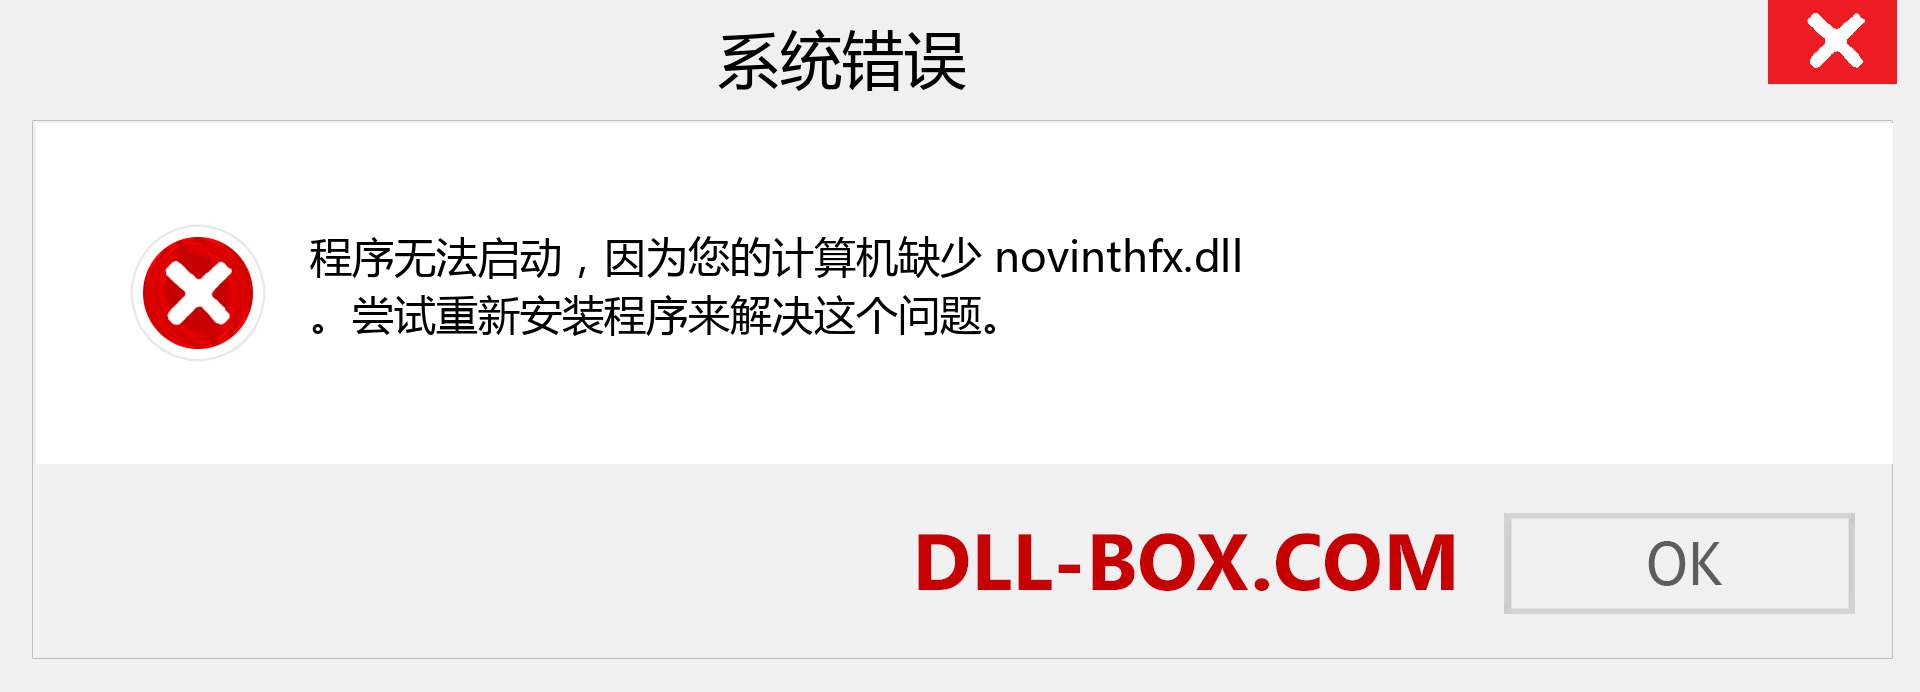 novinthfx.dll 文件丢失？。 适用于 Windows 7、8、10 的下载 - 修复 Windows、照片、图像上的 novinthfx dll 丢失错误